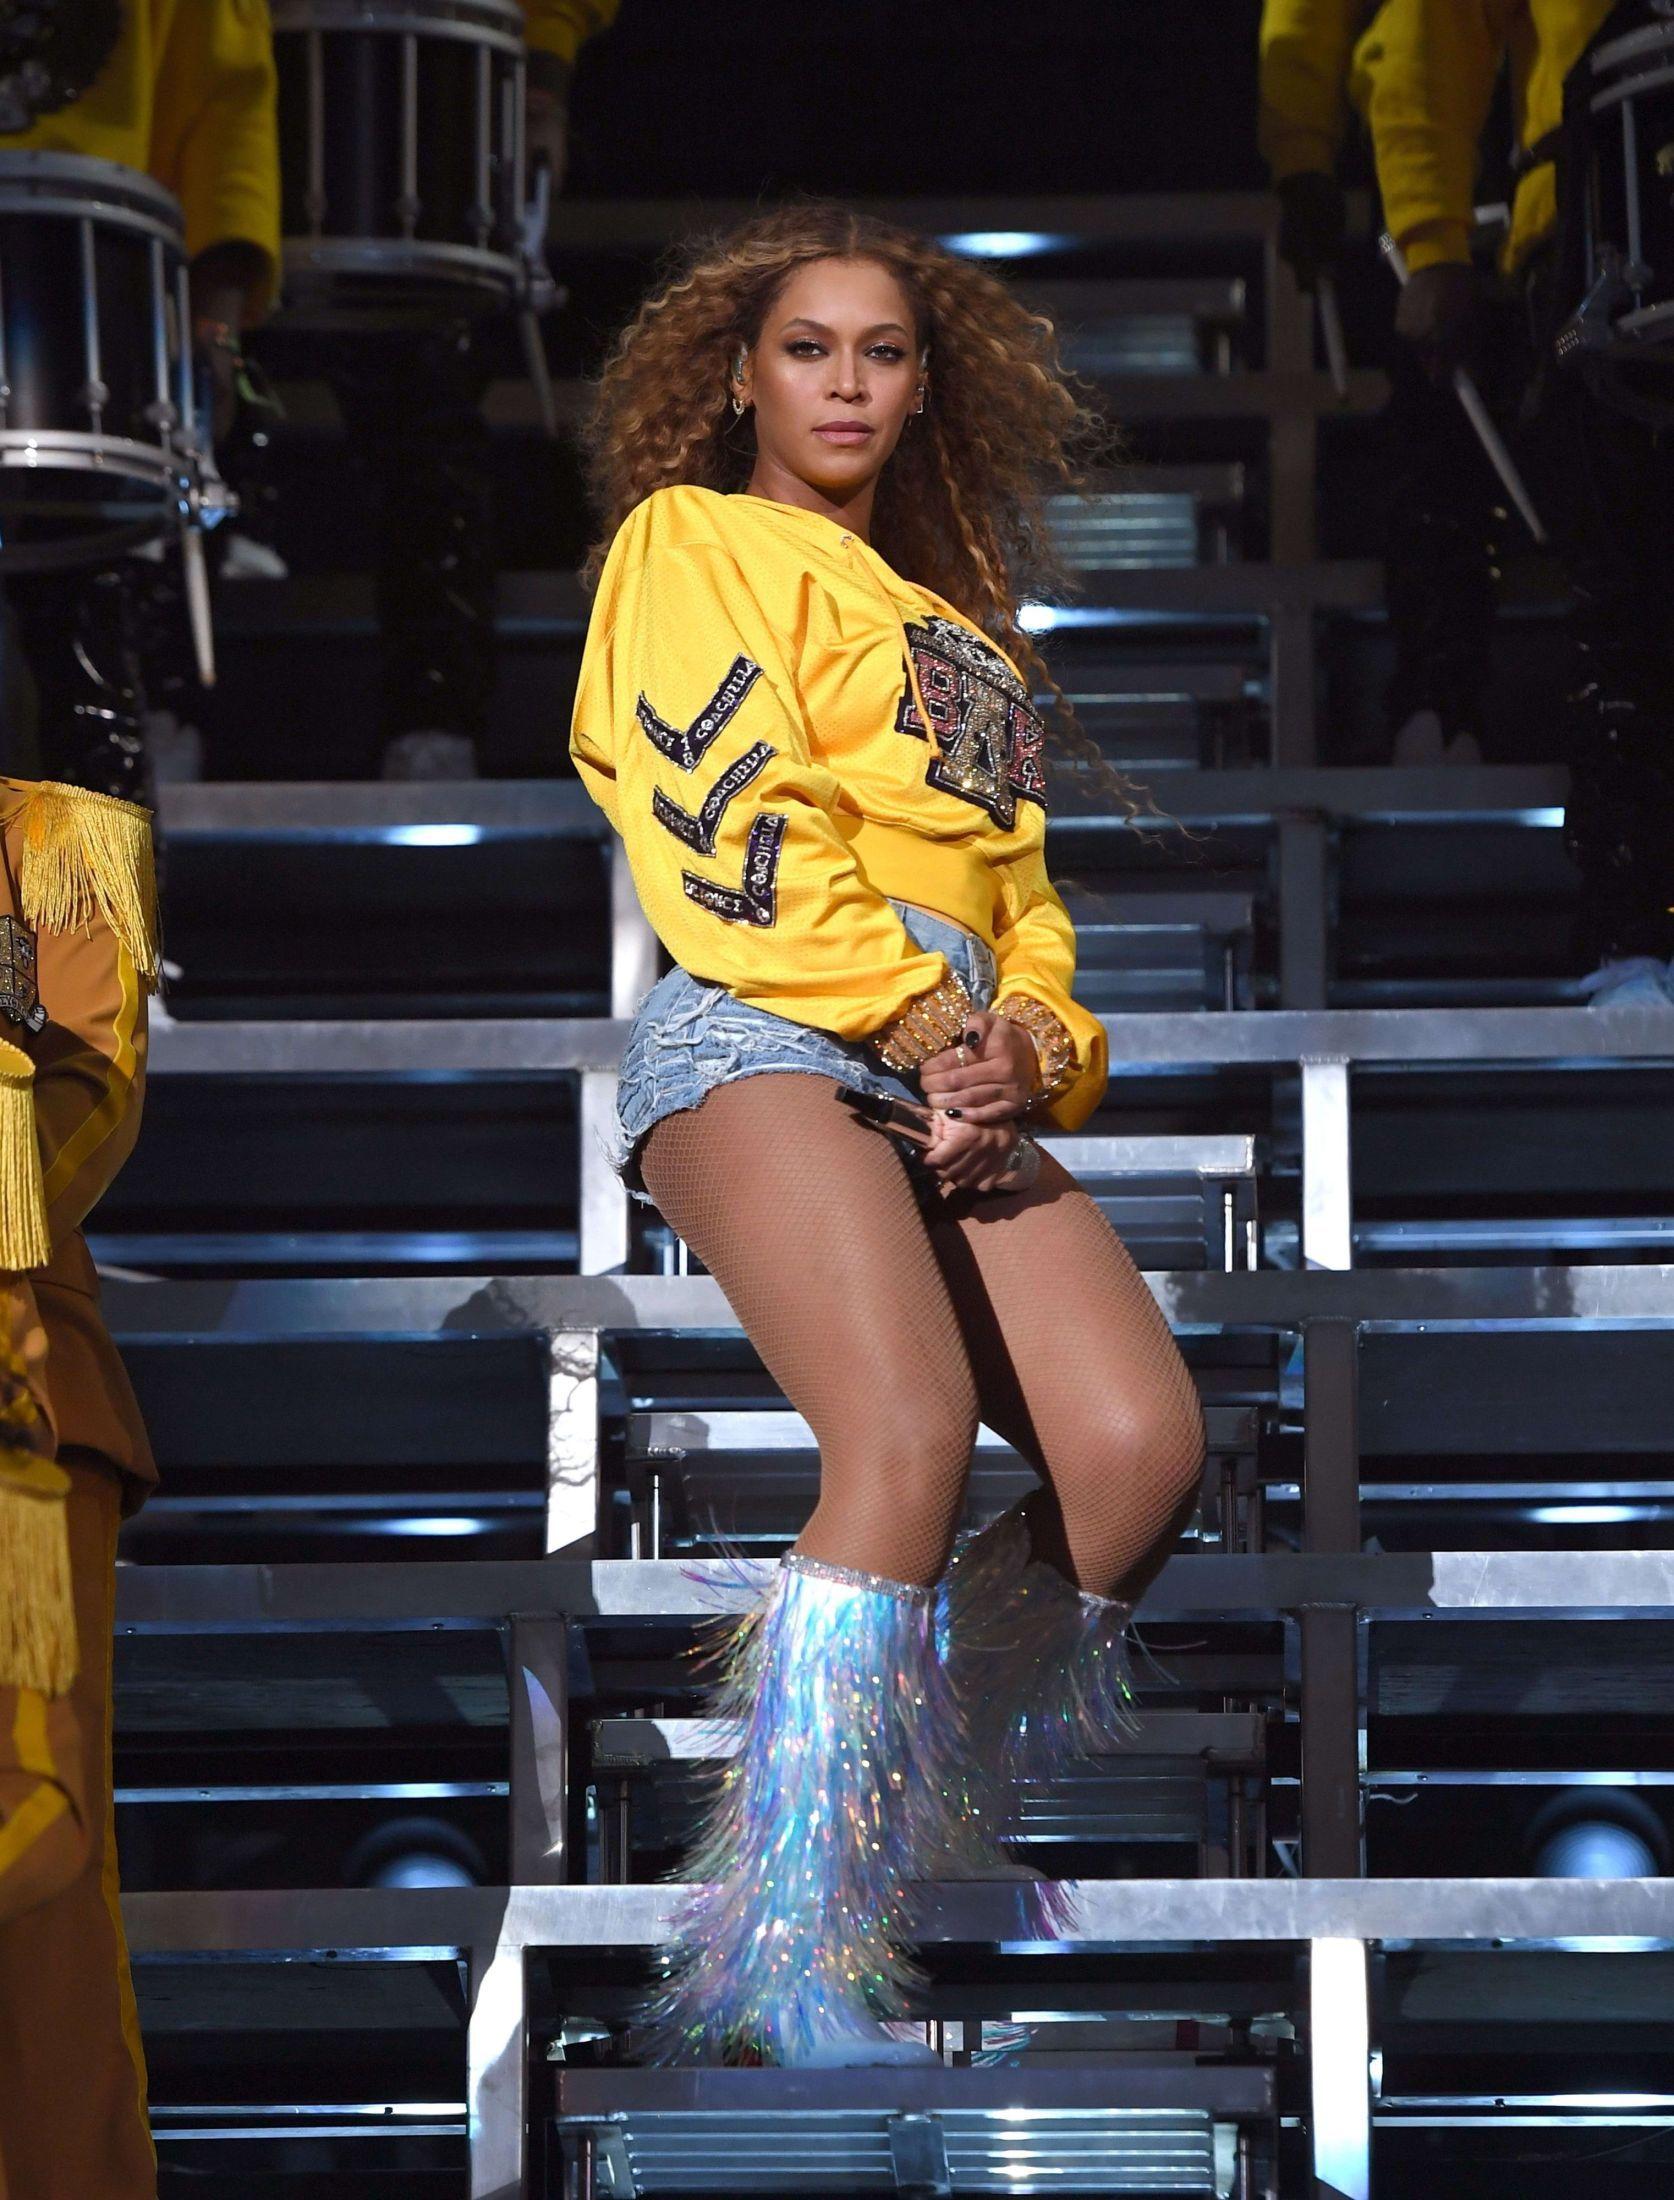 BEYCHELLA: Da Beyoncé spilte på Coachella i 2018 hadde hun jobbet seg tilbake i sceneform etter tvillingfødsel og en periode ute av rampelyset. Et av antrekkene hun brukte var denne gule collegegenseren kombinert med minishorts og rådyre frynseboots fra Christian Louboutin. 